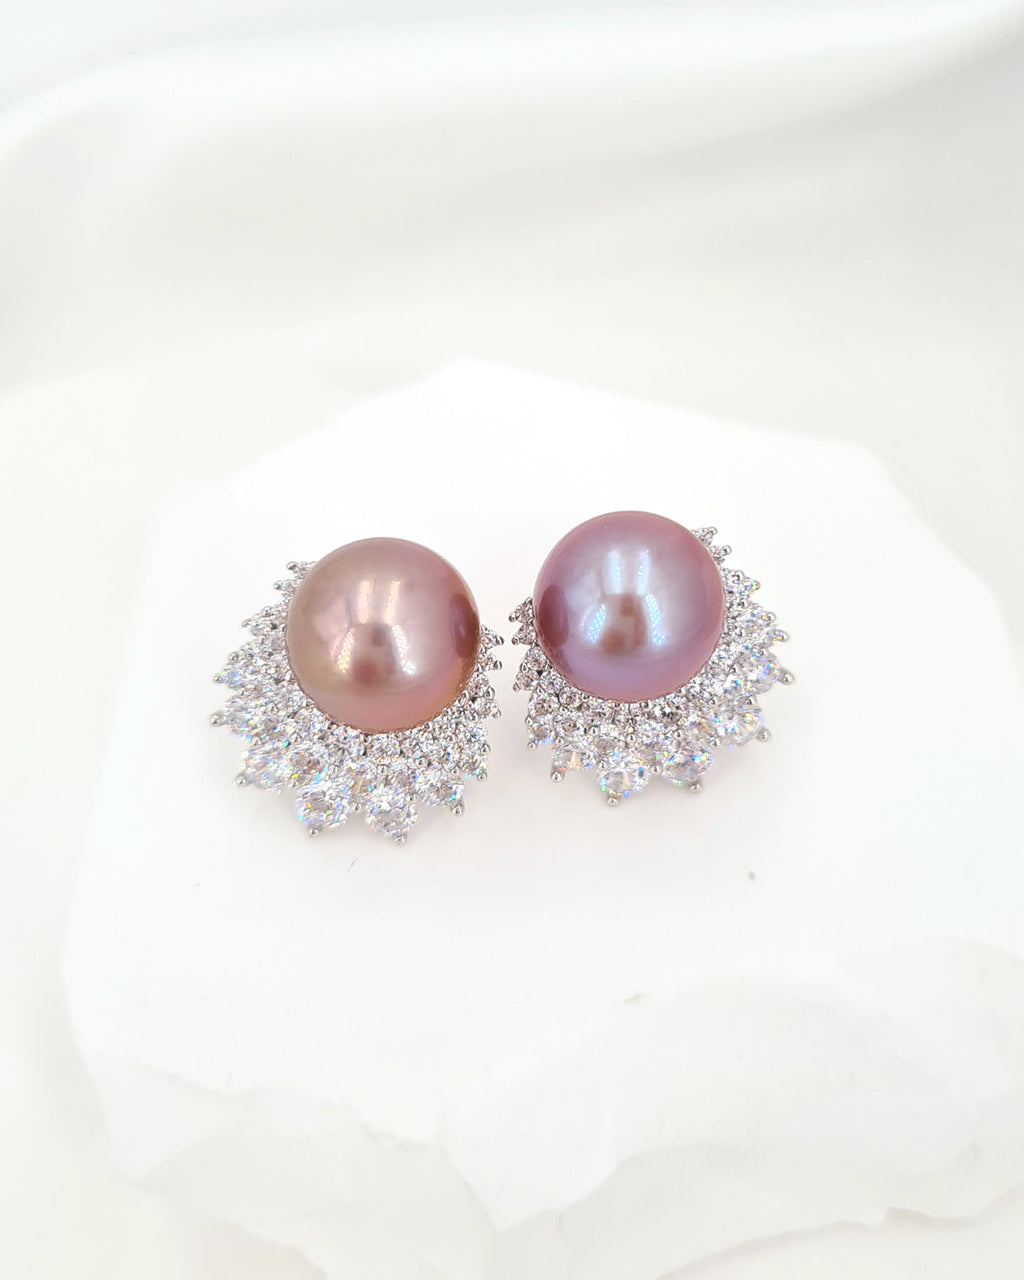 Purple Pink Edison Pearl Earrings - Cluster Latch Back Earrings in Sterling Silver, Handmade in Singapore